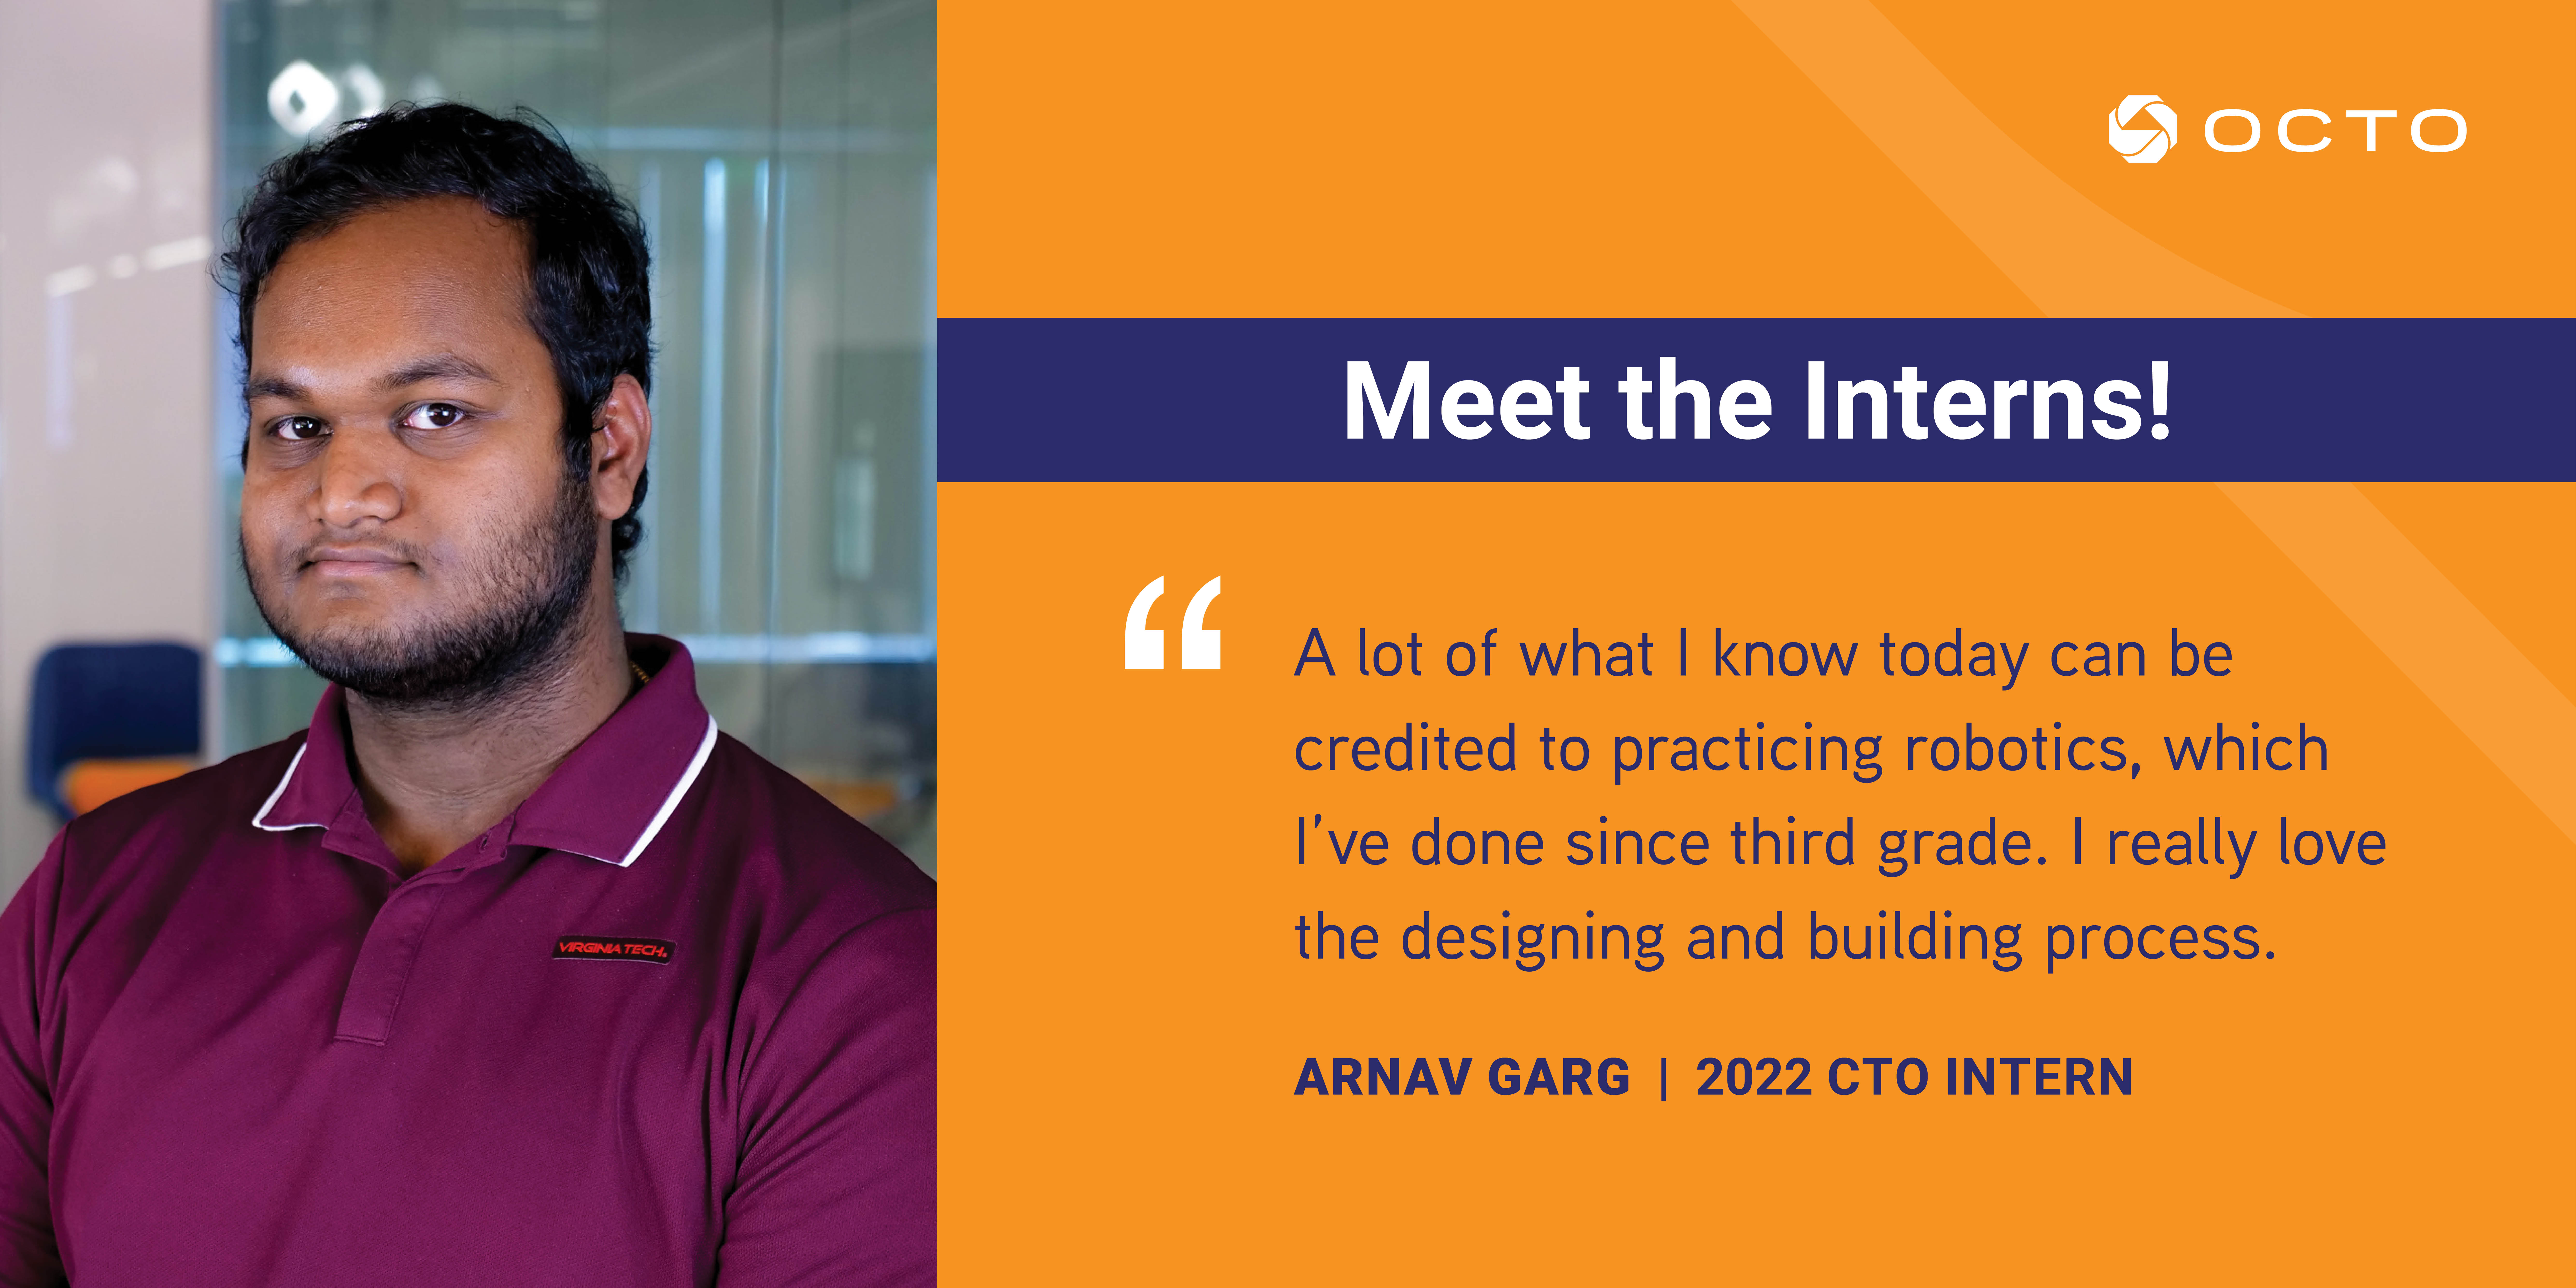 Octo Meet the Interns: Arnav Garg